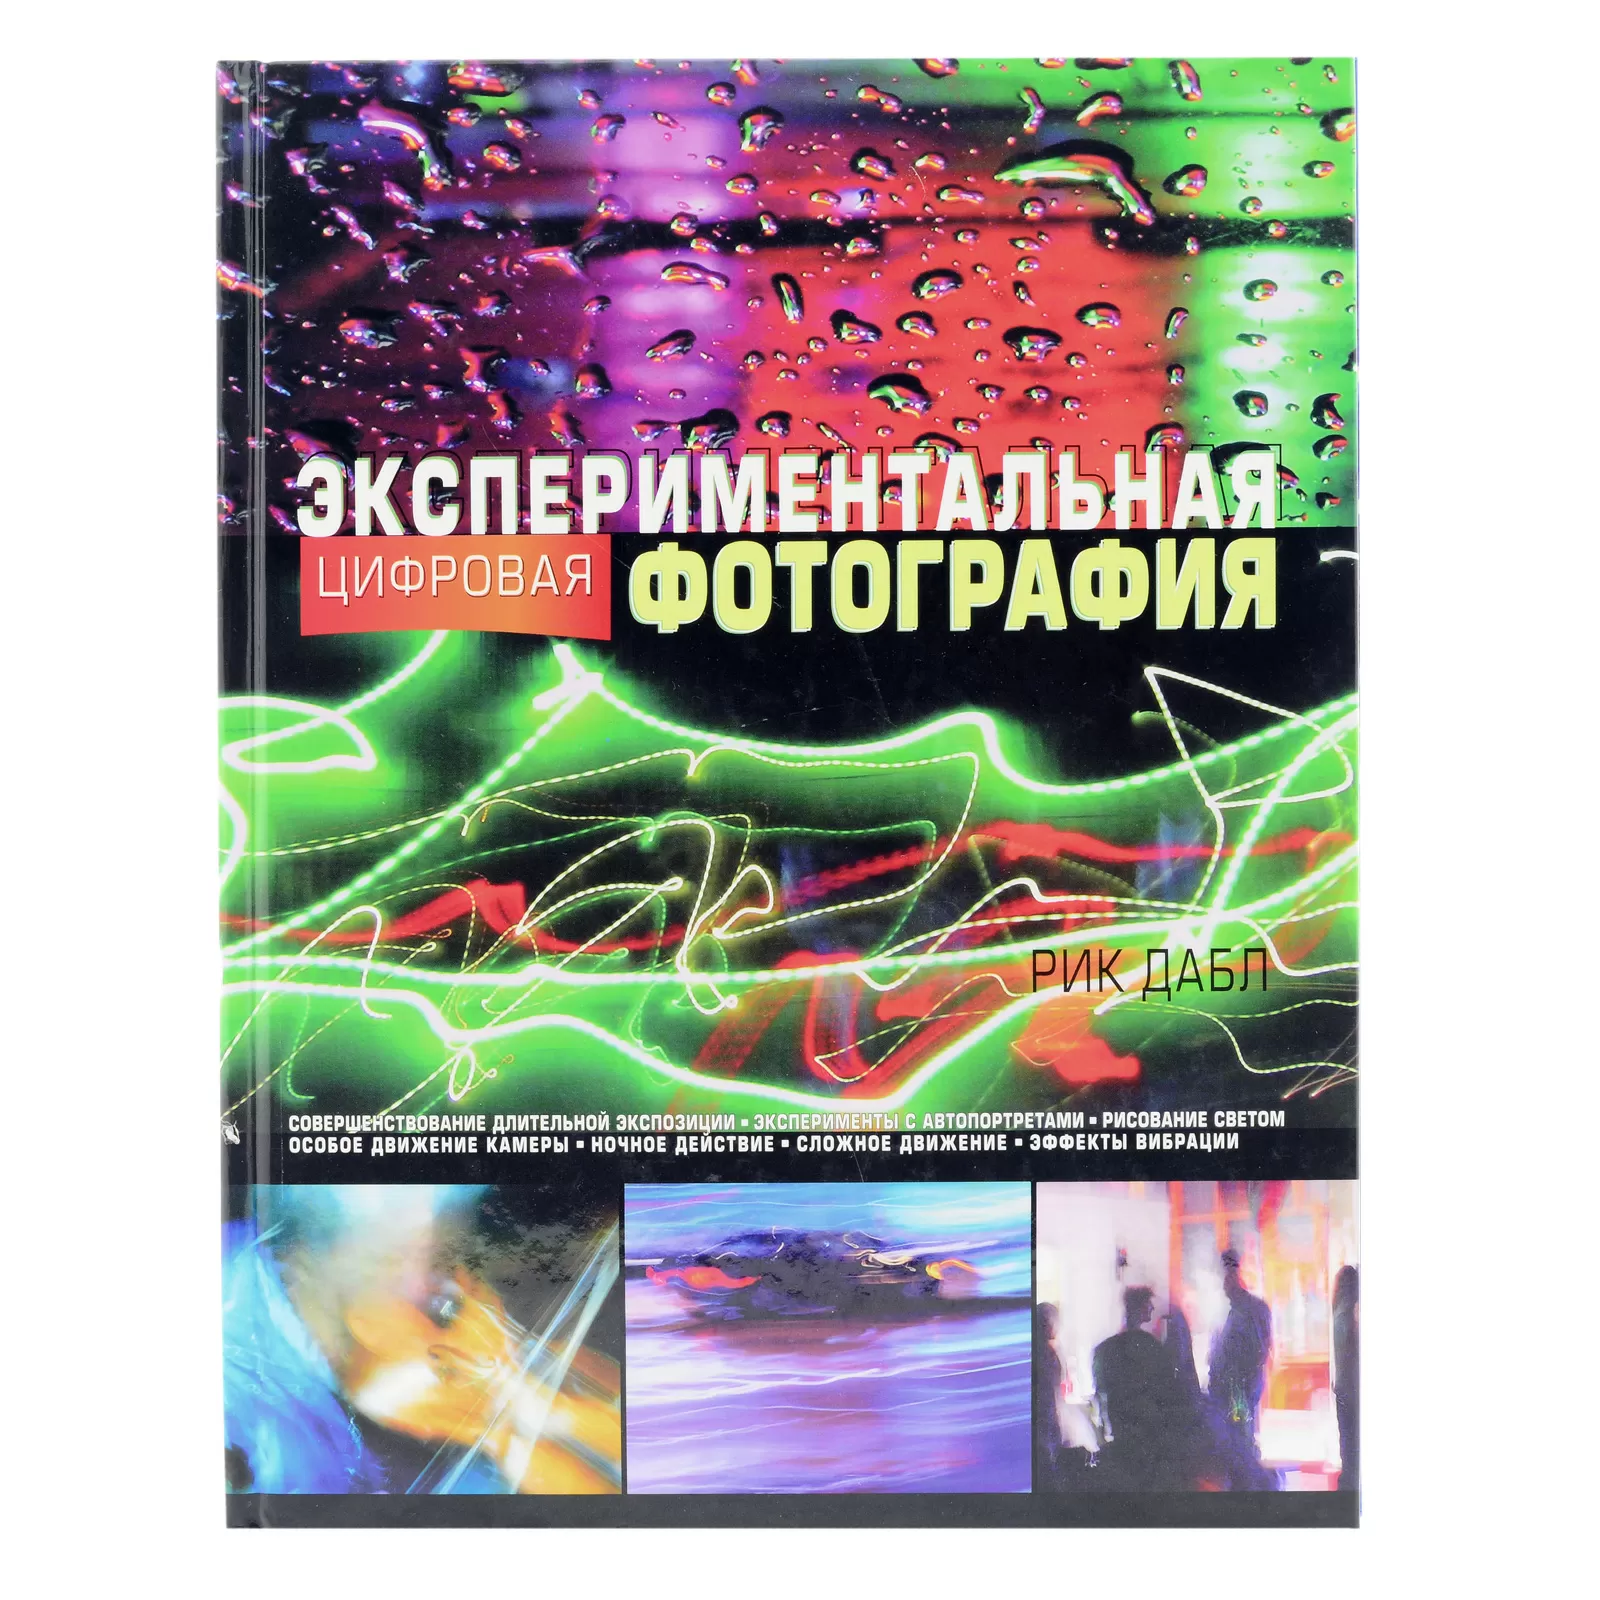 Книга "Экспериментальная цифровая фотография" Рик Дабл б/у